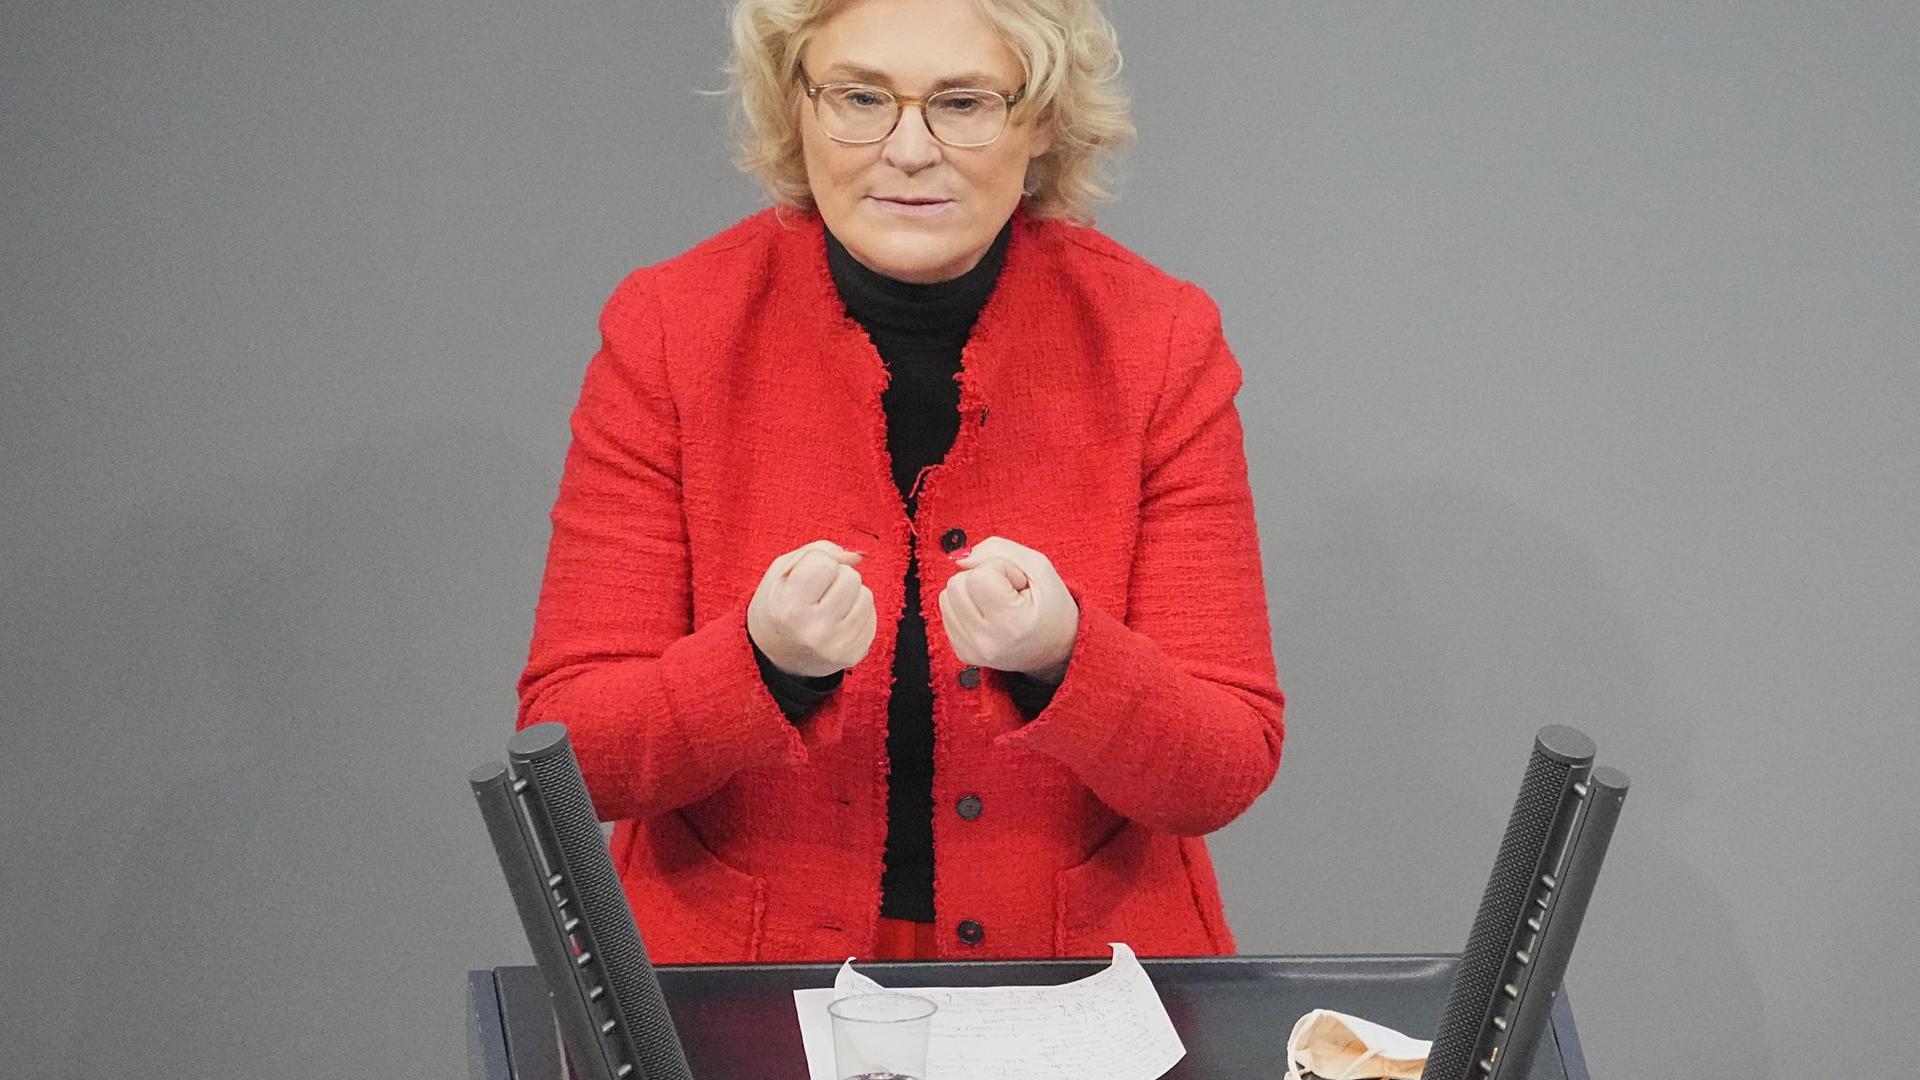 Justizministerin Christine Lambrecht (SPD) hat im Bundestag Lockerungen für Geimpfte und Genesene angekündigt.